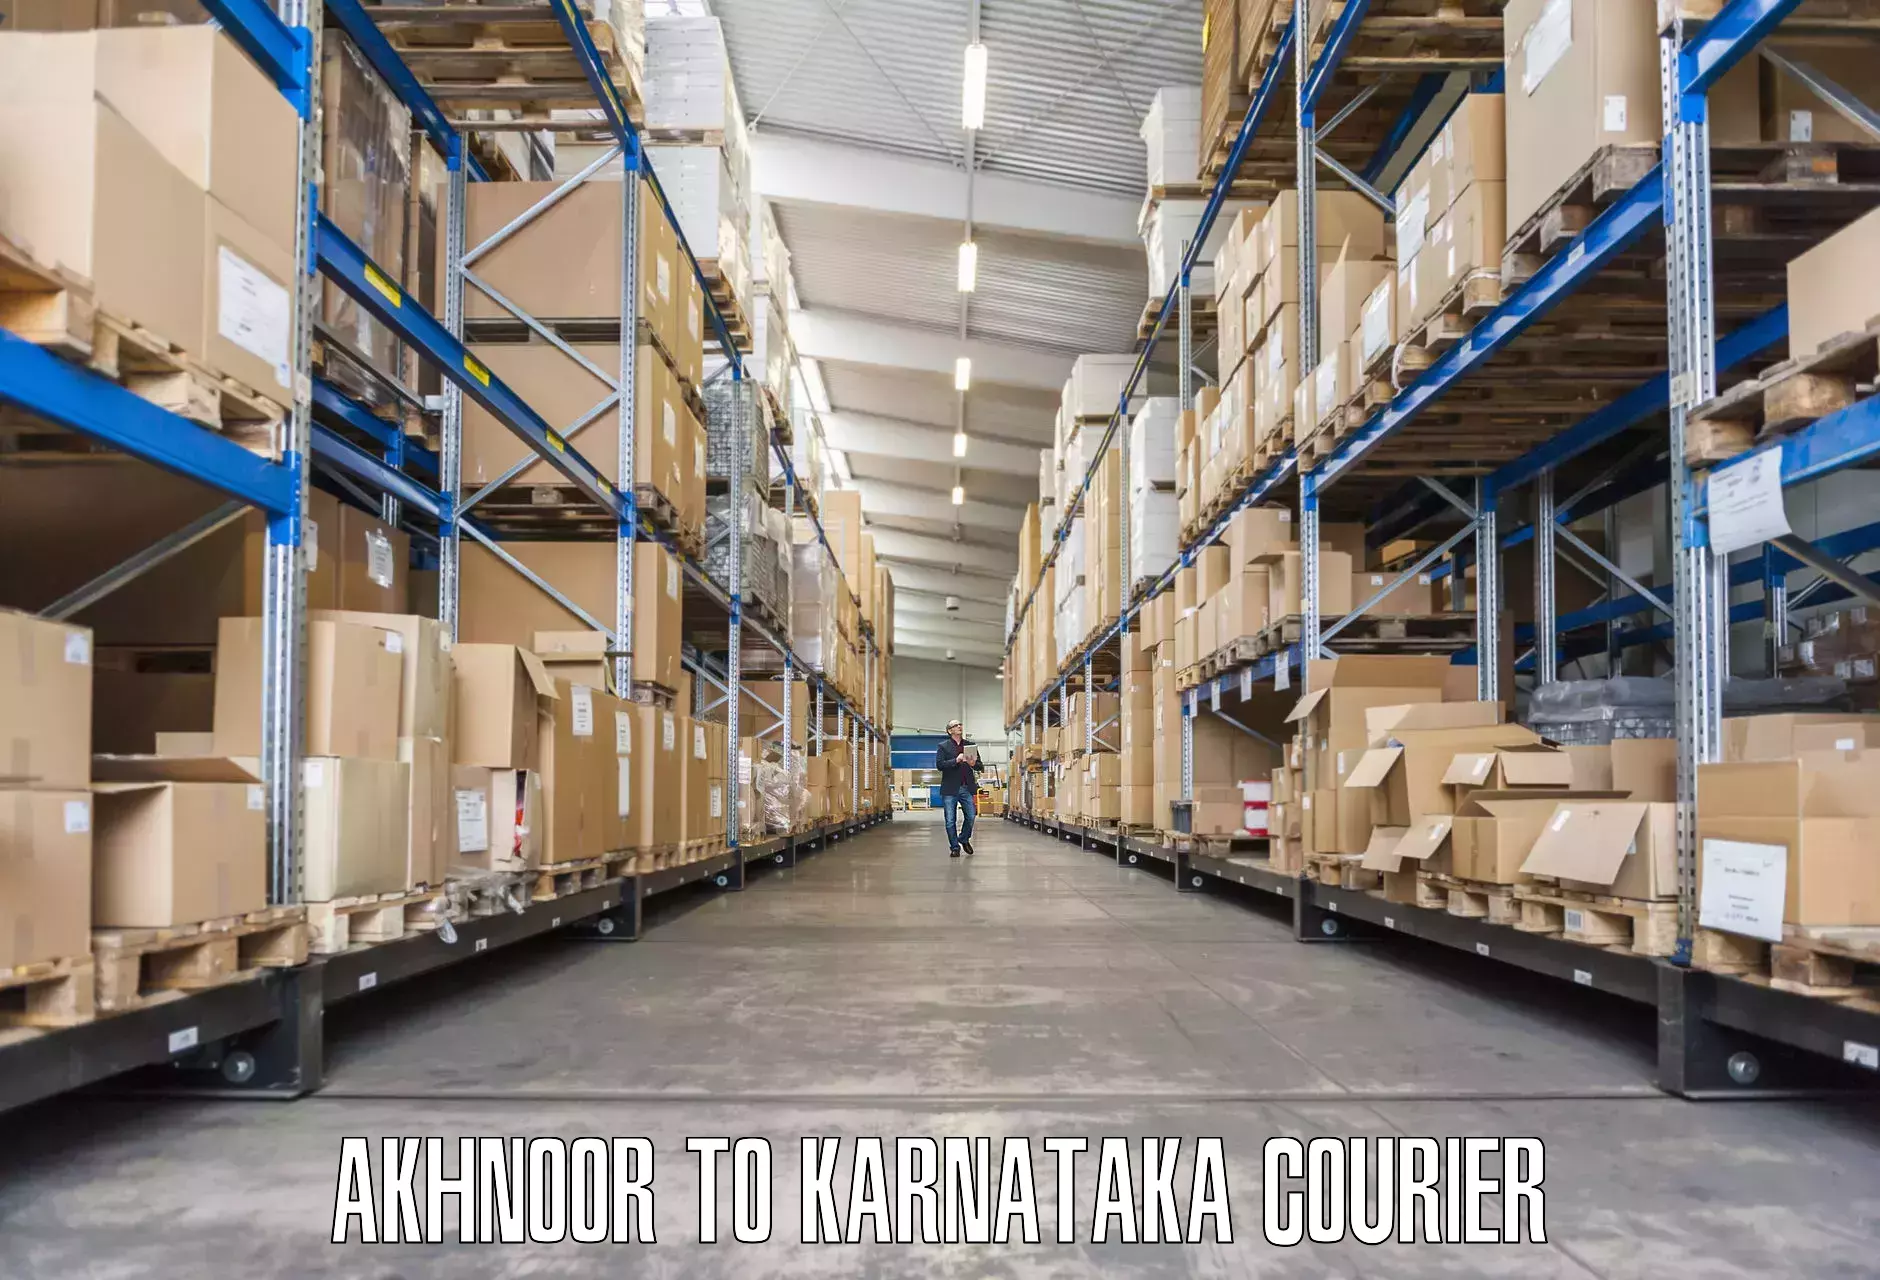 Furniture shipping services Akhnoor to Kanjarakatte